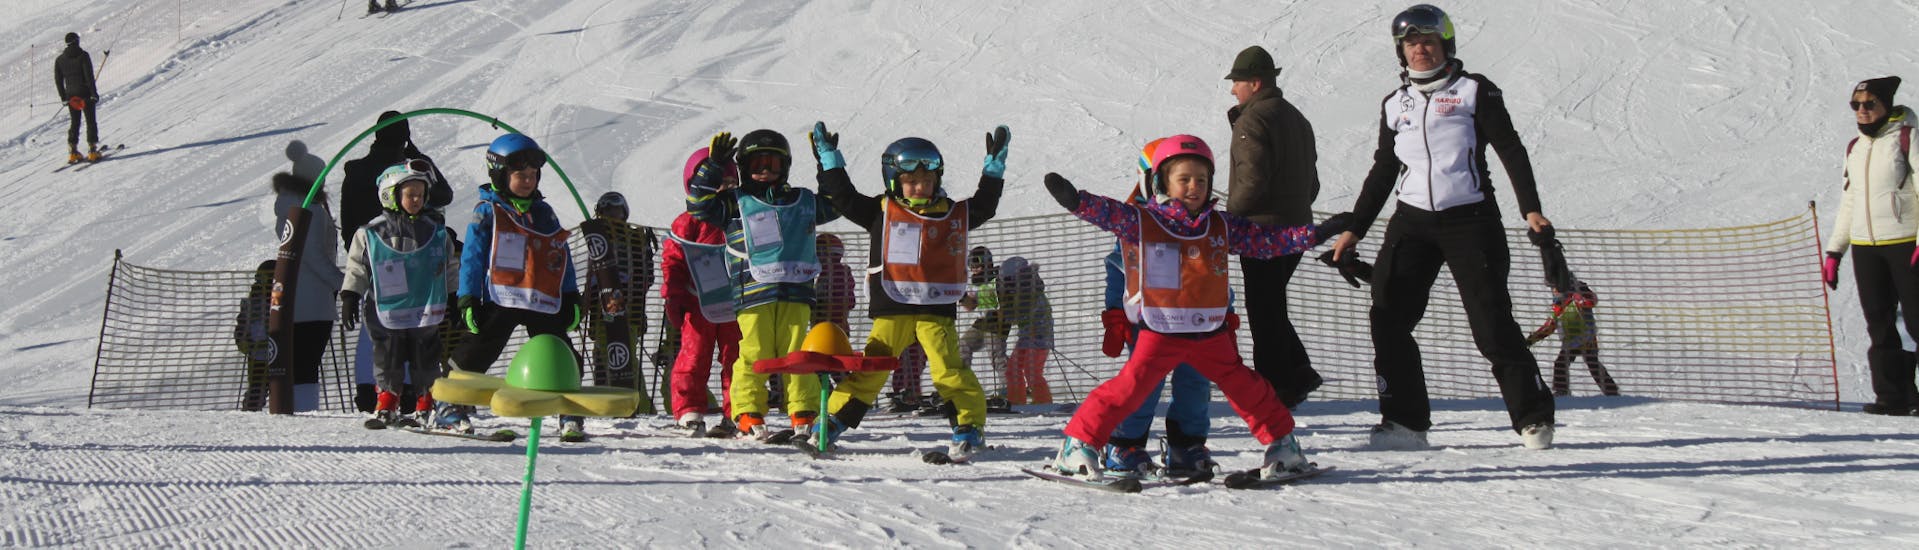 Kinderen die zich vermaken tijdens kinderskilessen (4-6 jaar) voor beginners bij de Giorgio Rocca Ski Academy in Crans-Montana.